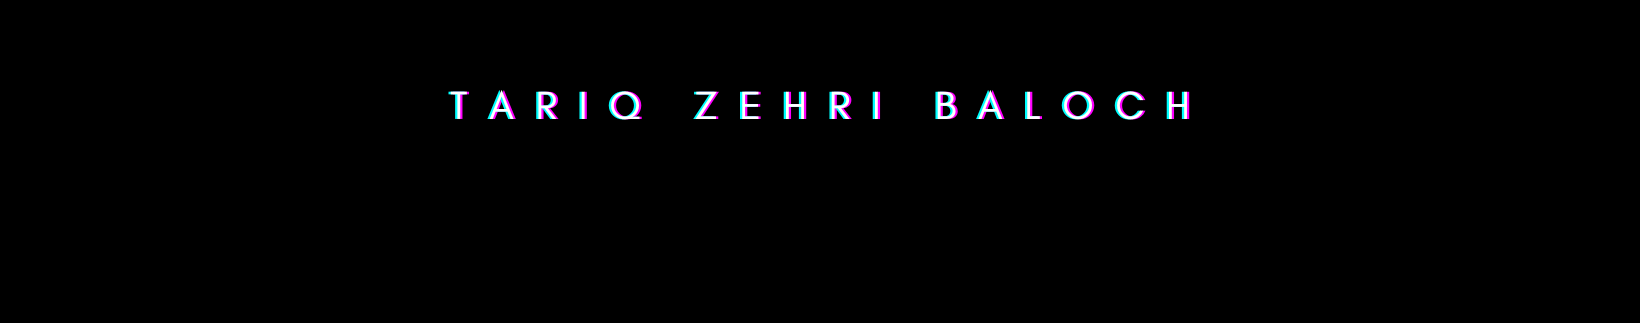 Profil-Banner von Tariq Zehri Baloch